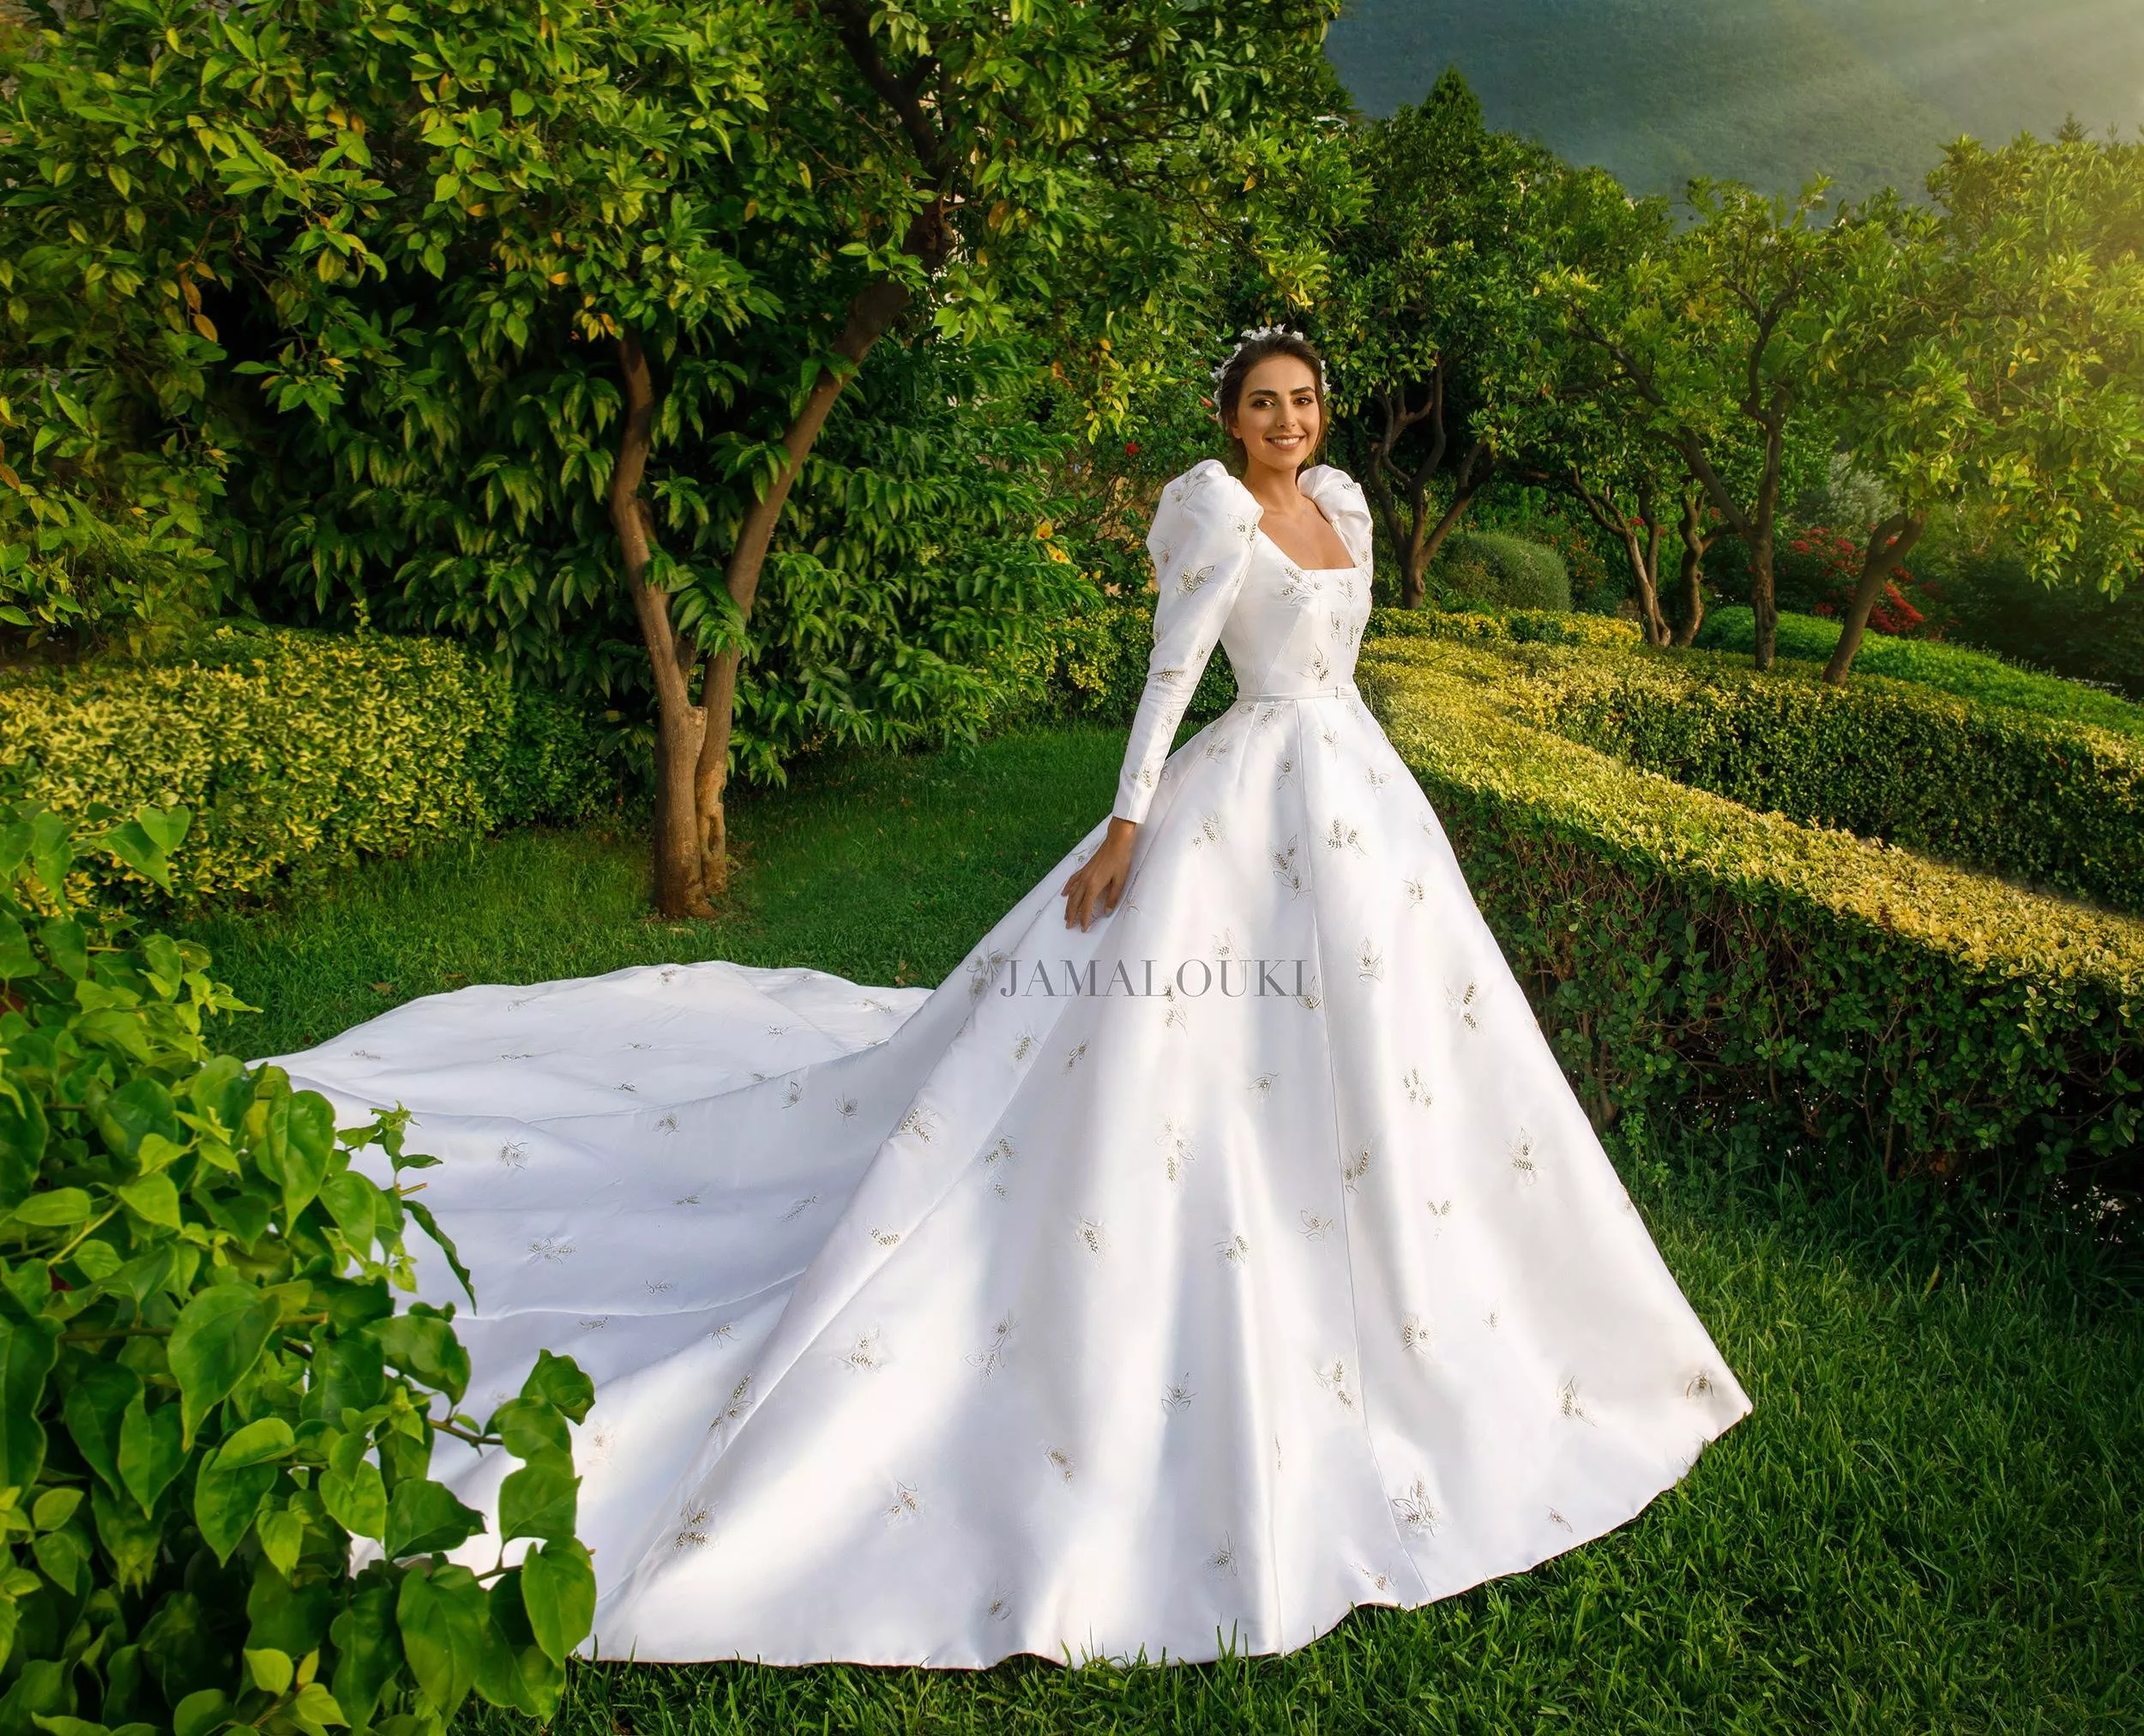 الصور الأولى والحصرية للعروس فاليري أبو شقرا على غلاف جمالكِ: إطلالة ملوكية استثنائية!